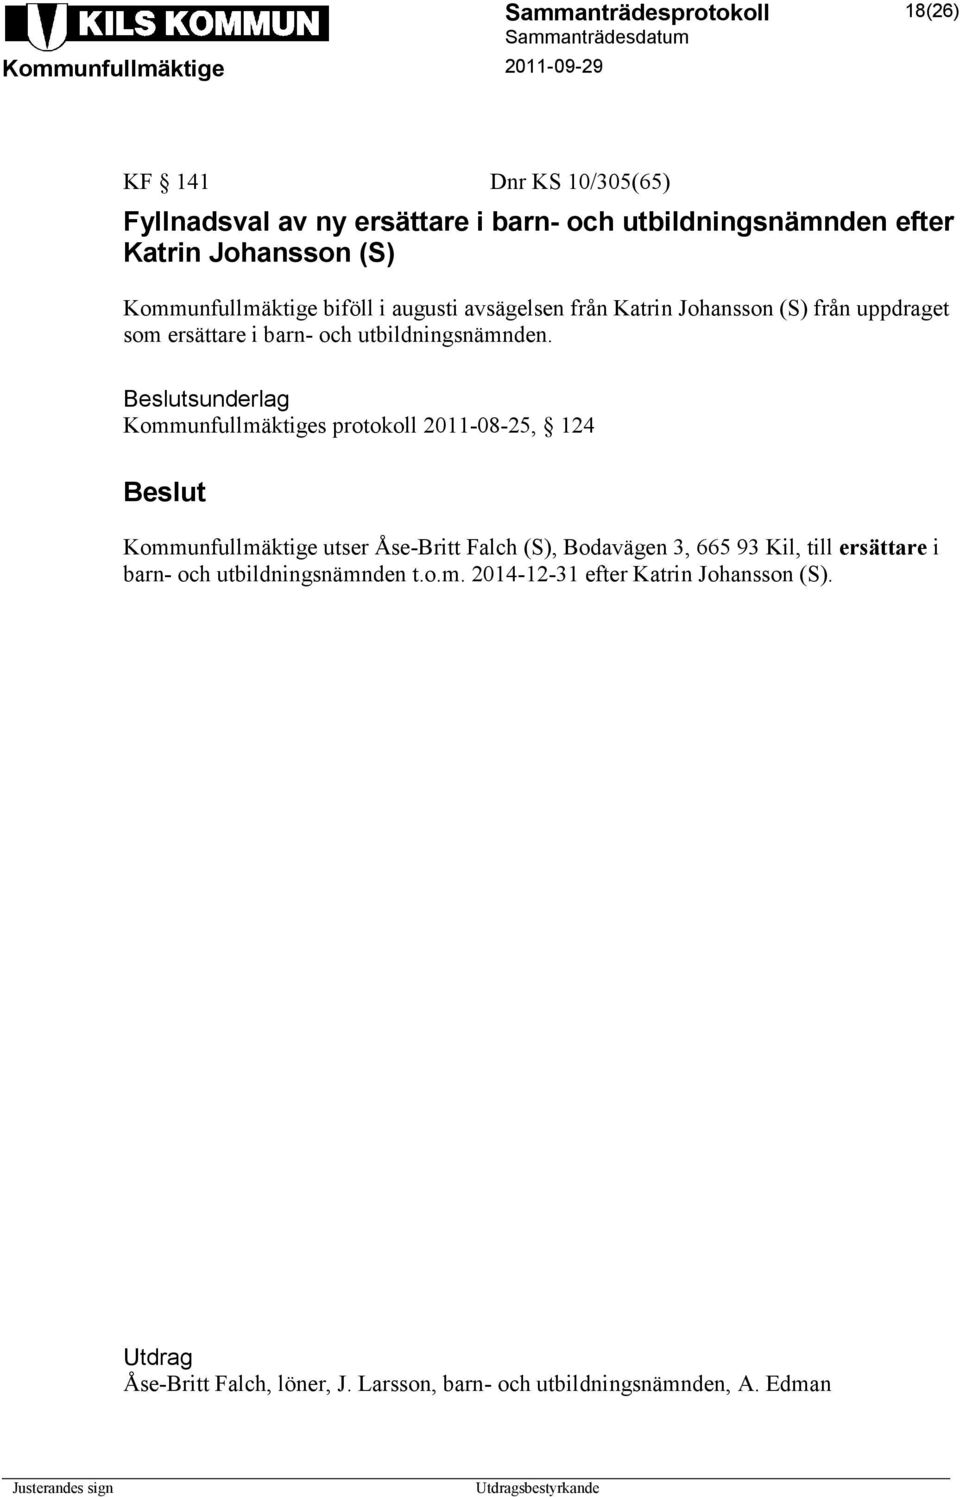 sunderlag Kommunfullmäktiges protokoll 2011-08-25, 124 Kommunfullmäktige utser Åse-Britt Falch (S), Bodavägen 3, 665 93 Kil, till